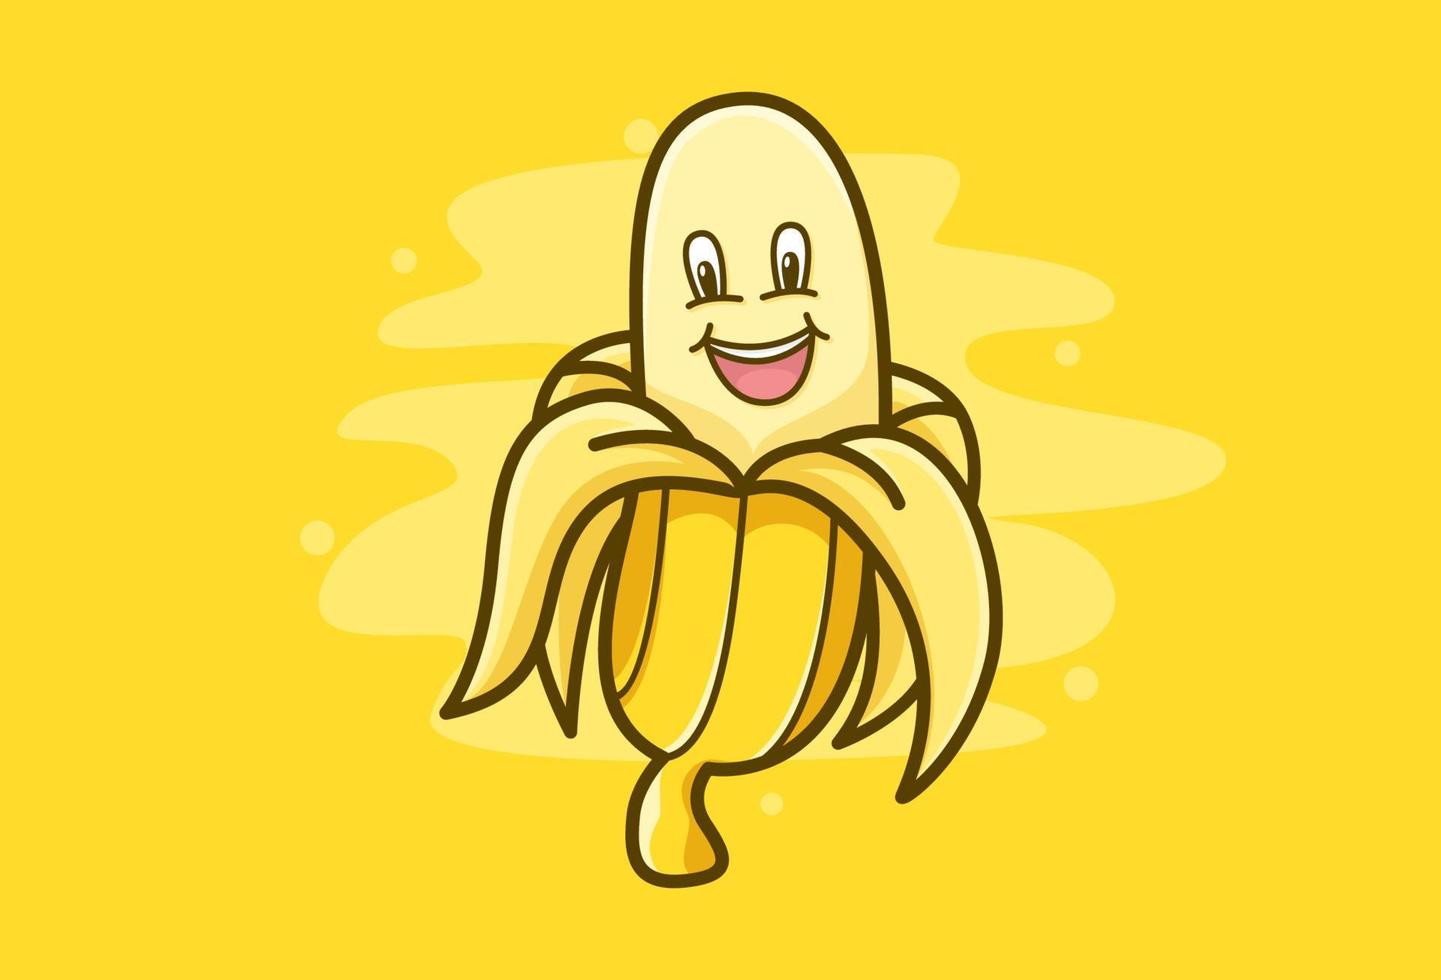 projeto de vetor de logotipo de banana. design de ilustração de mascote de banana fofa